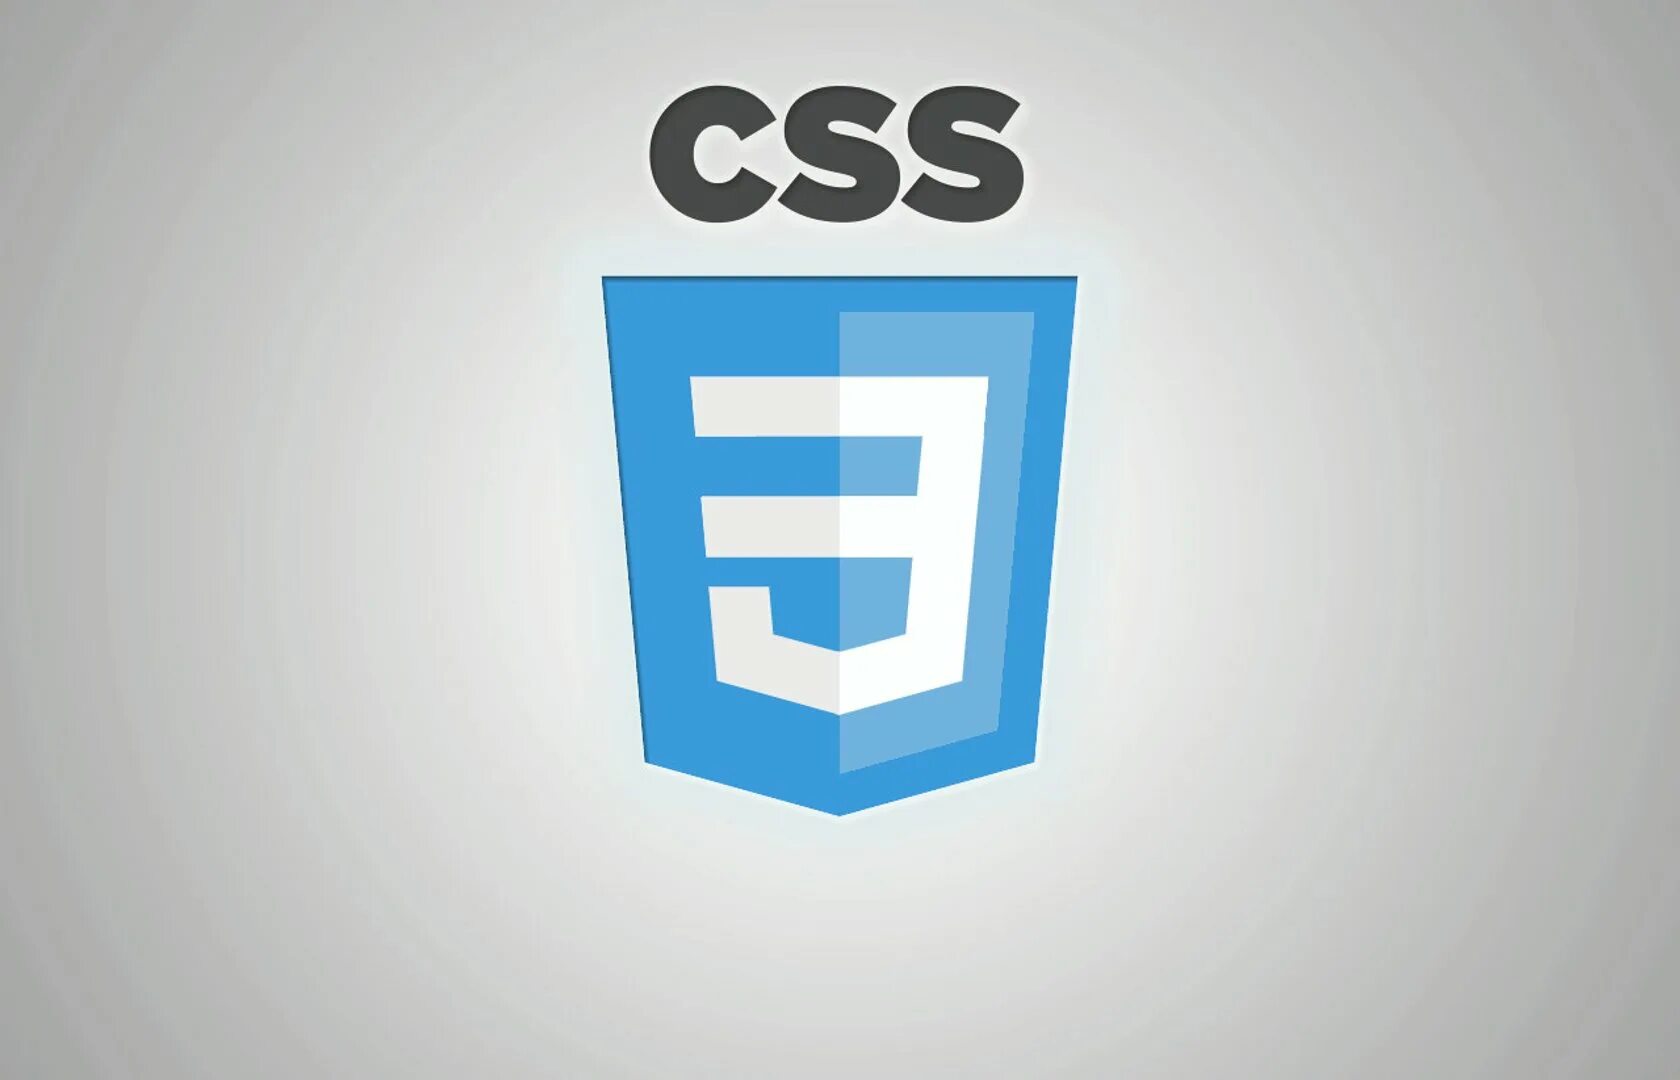 Rounded html. Css3 логотип. Значок css3. CSS эмблема. CSS лого.